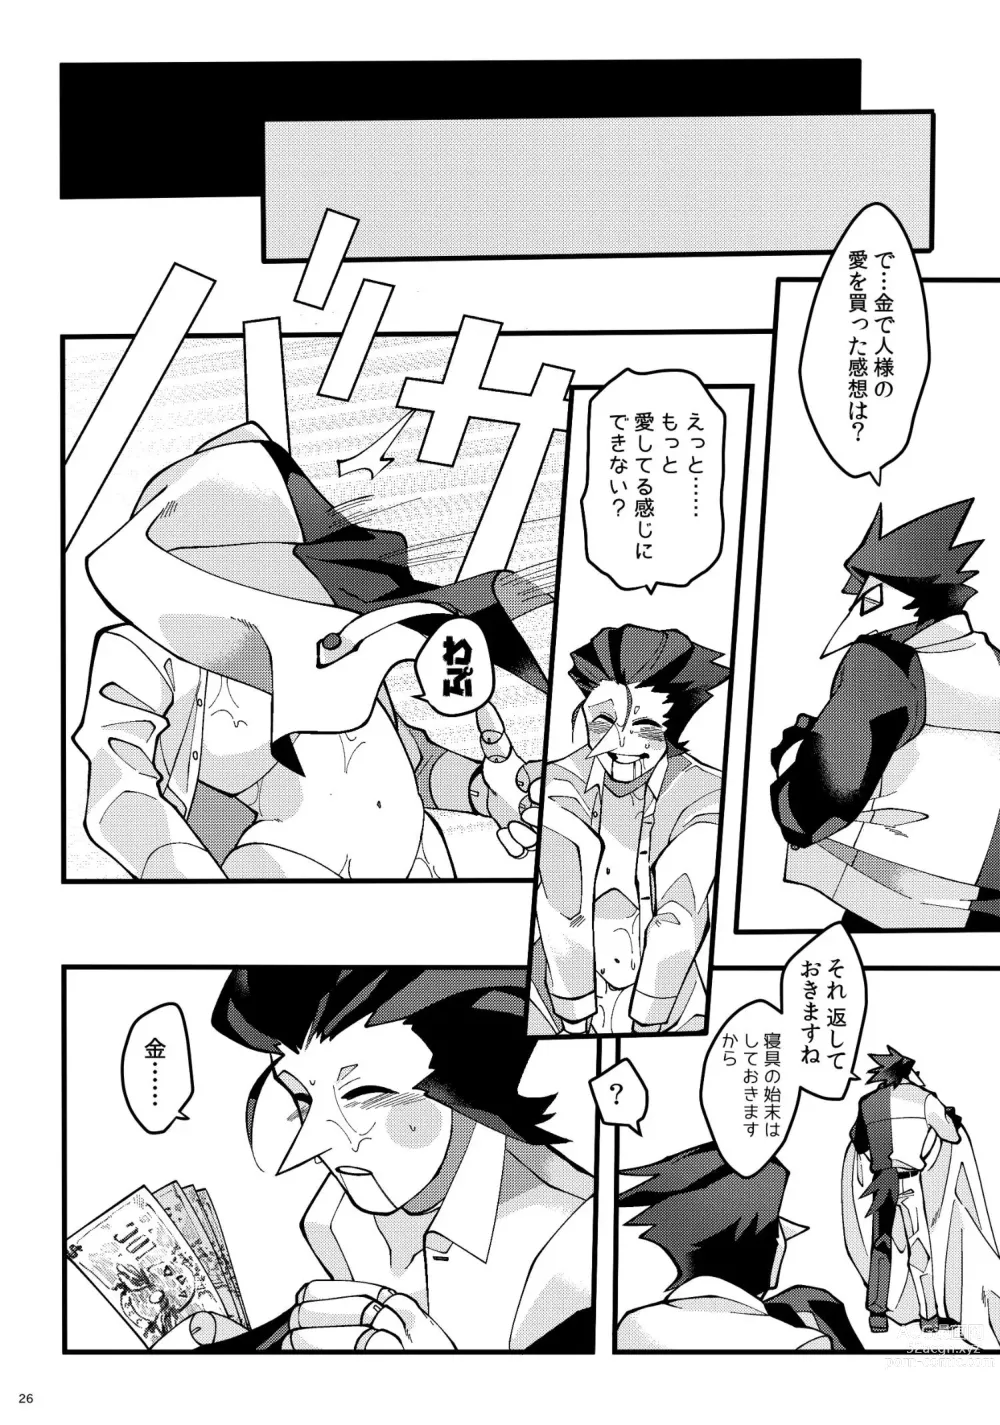 Page 27 of doujinshi Uchoutengai